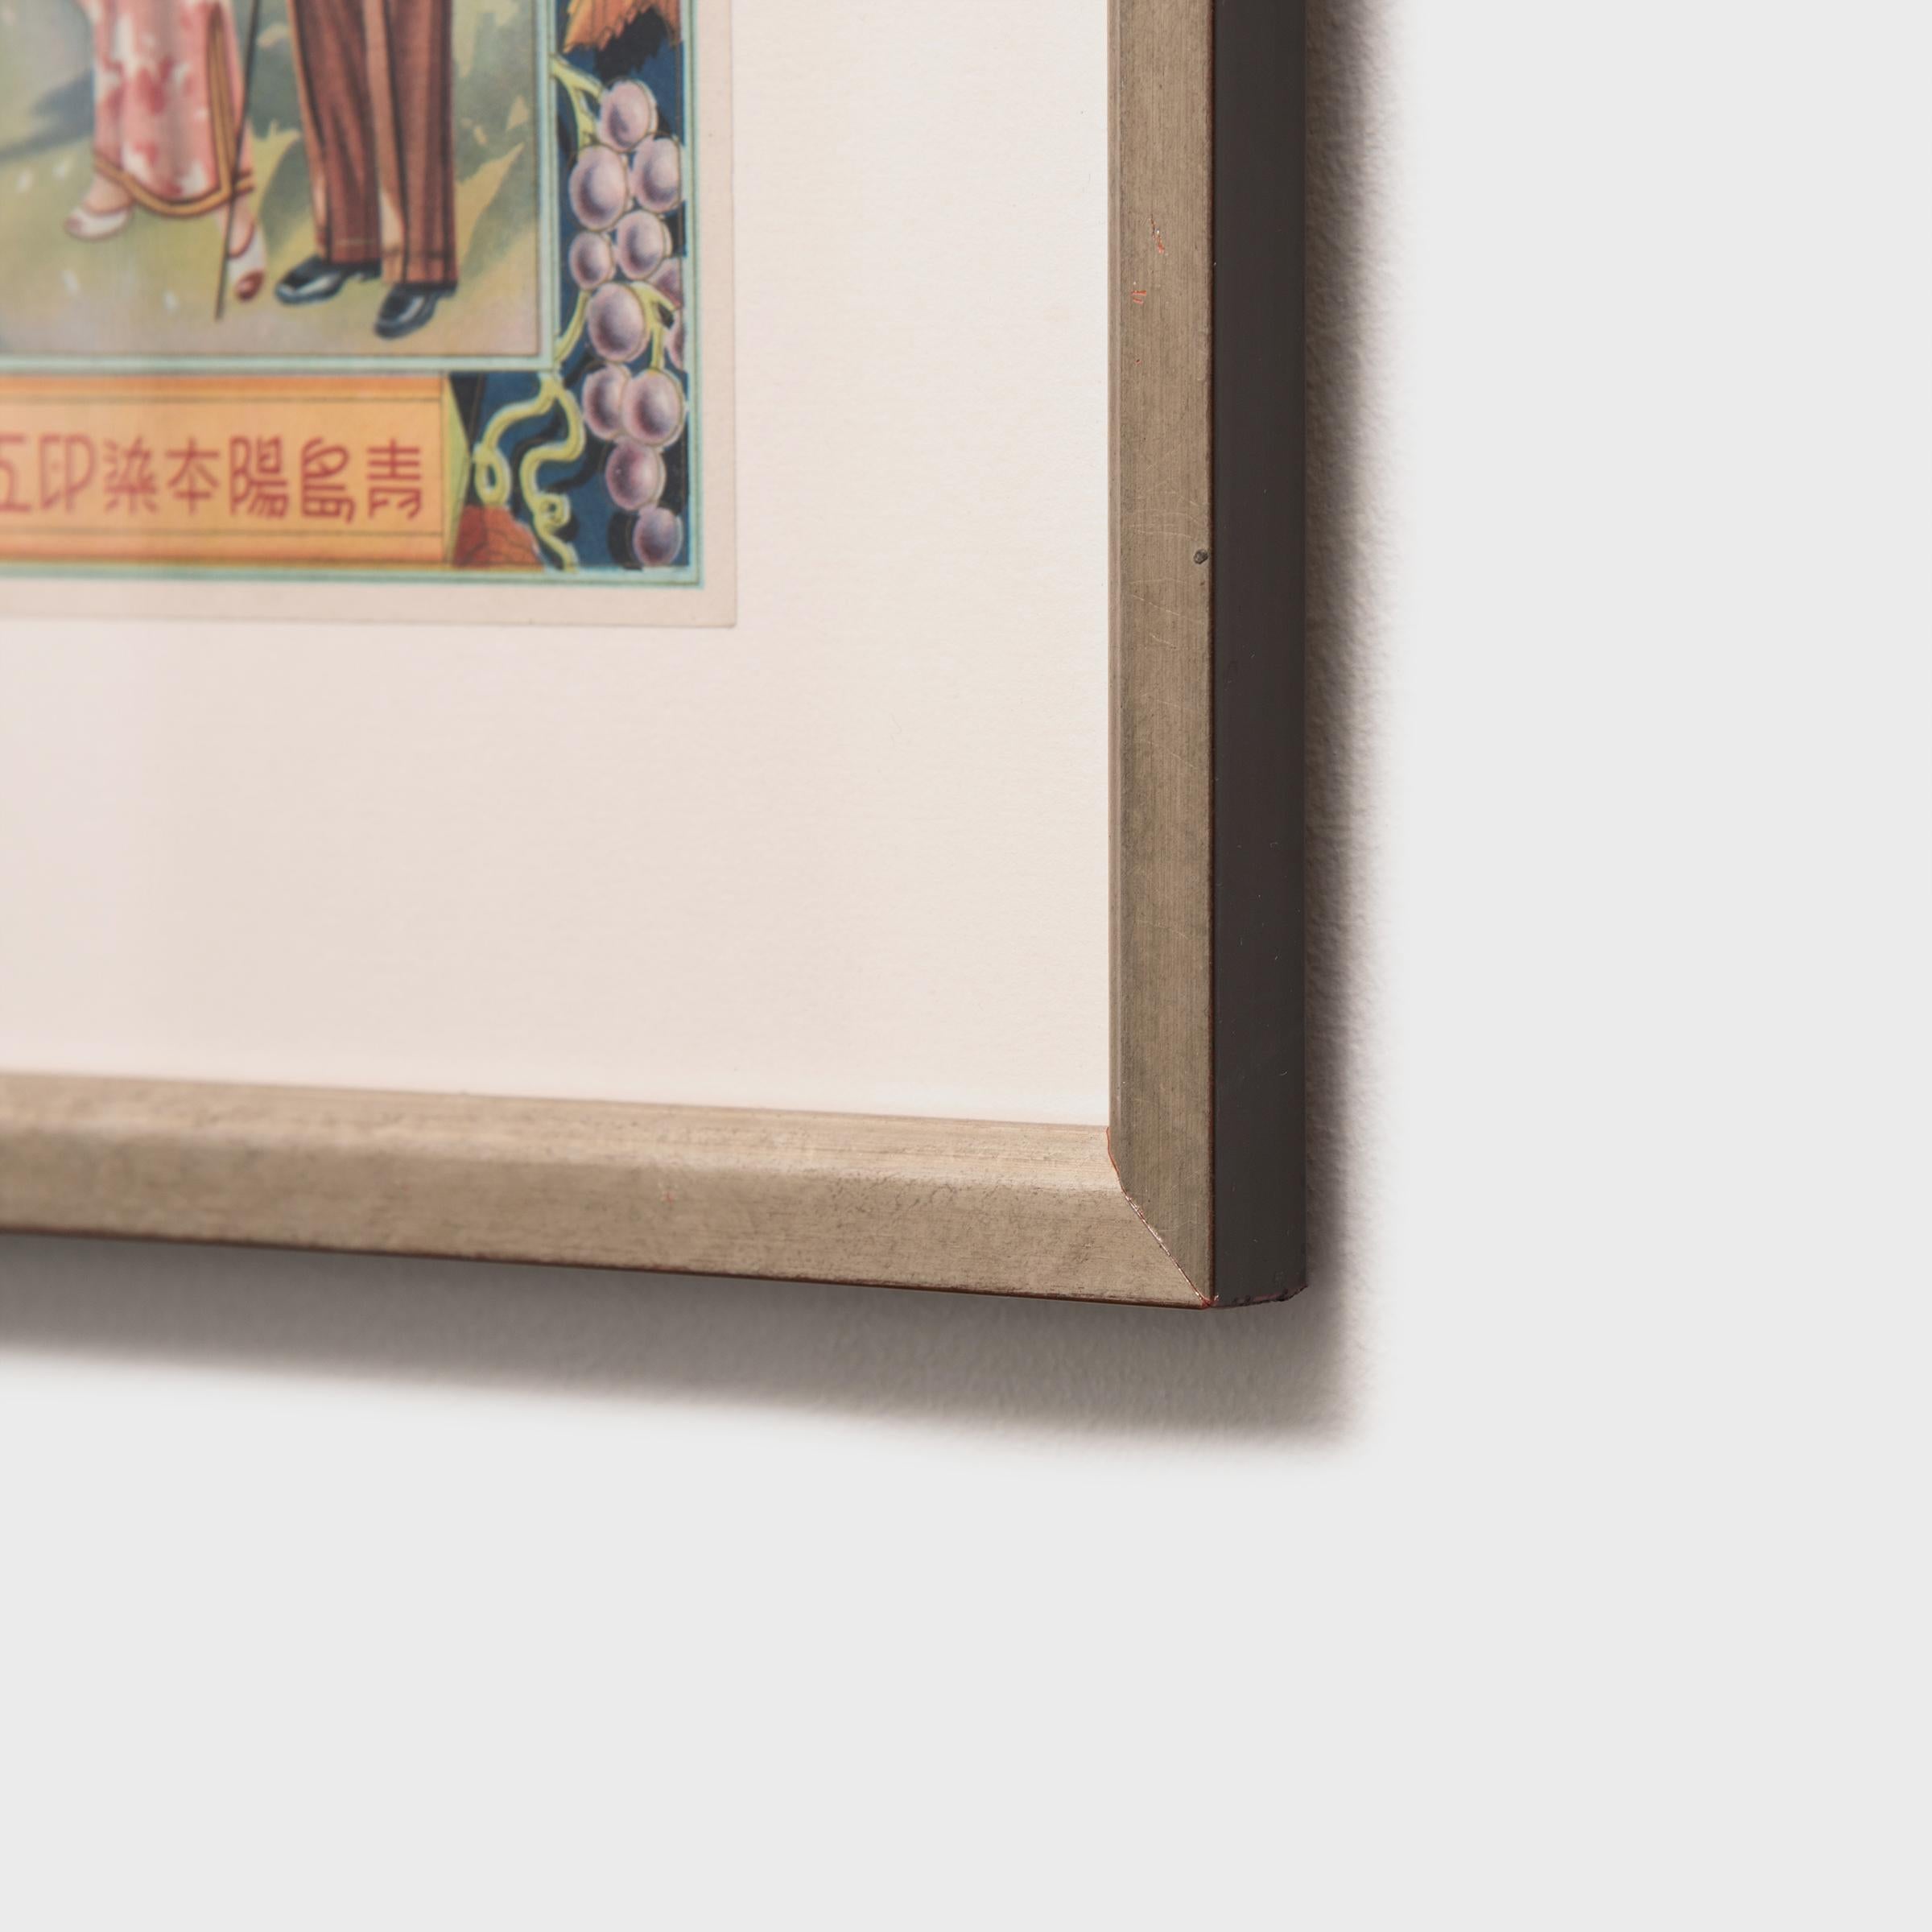 Advertisement der chinesischen Republikzeit (Beige), Portrait Print, von Unknown